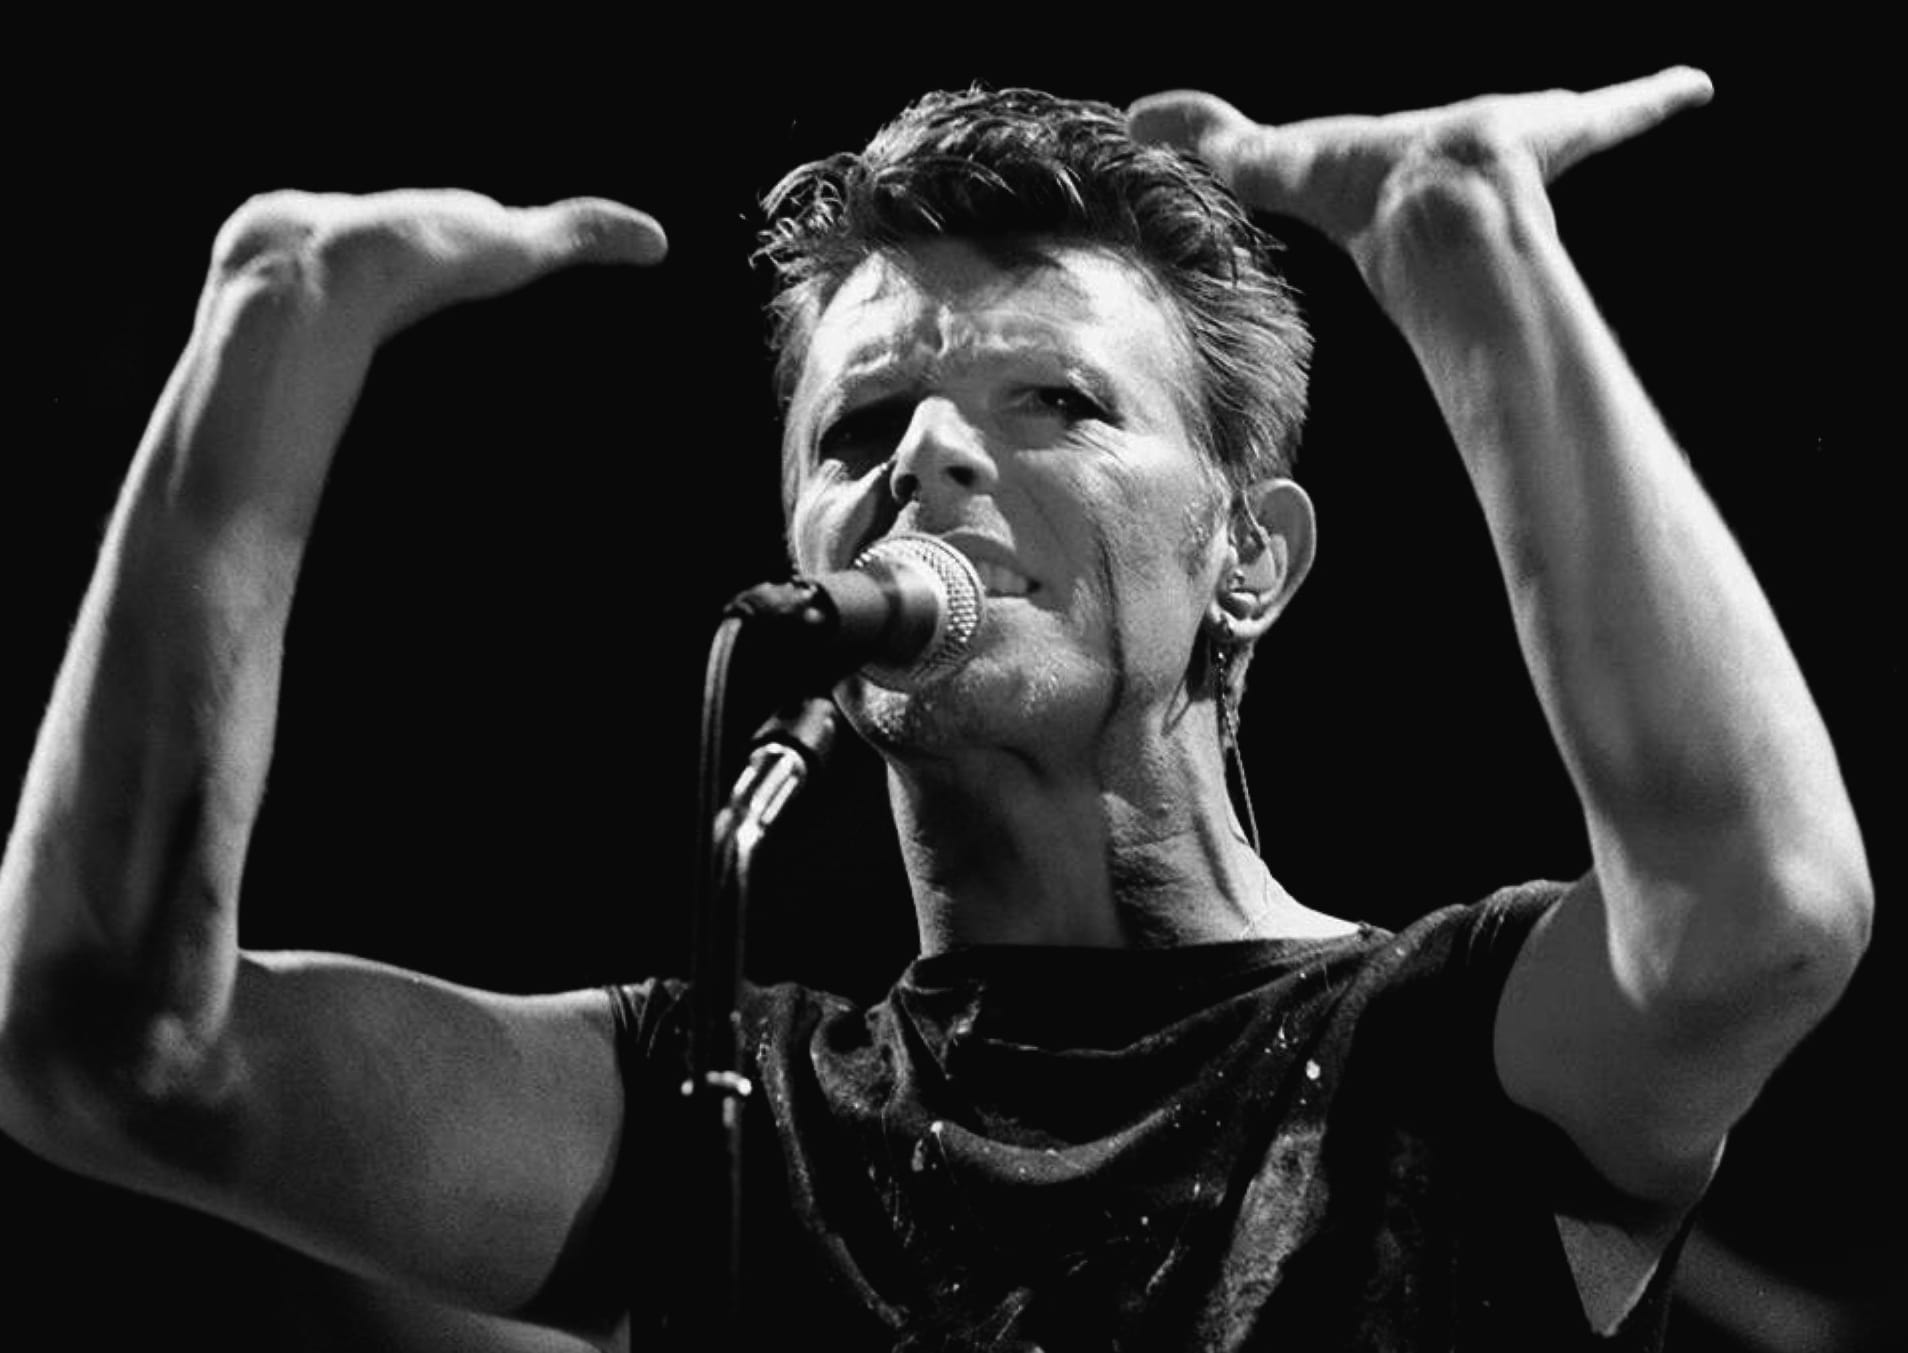 Rocksänger David Bowie erlag am 10. Januar 2016 einem Krebsleiden - nur zwei Tage nach seinem 69. Geburtstag. Bowie gilt als eine der prägendsten Rock- und Pop-Größen aller Zeiten.